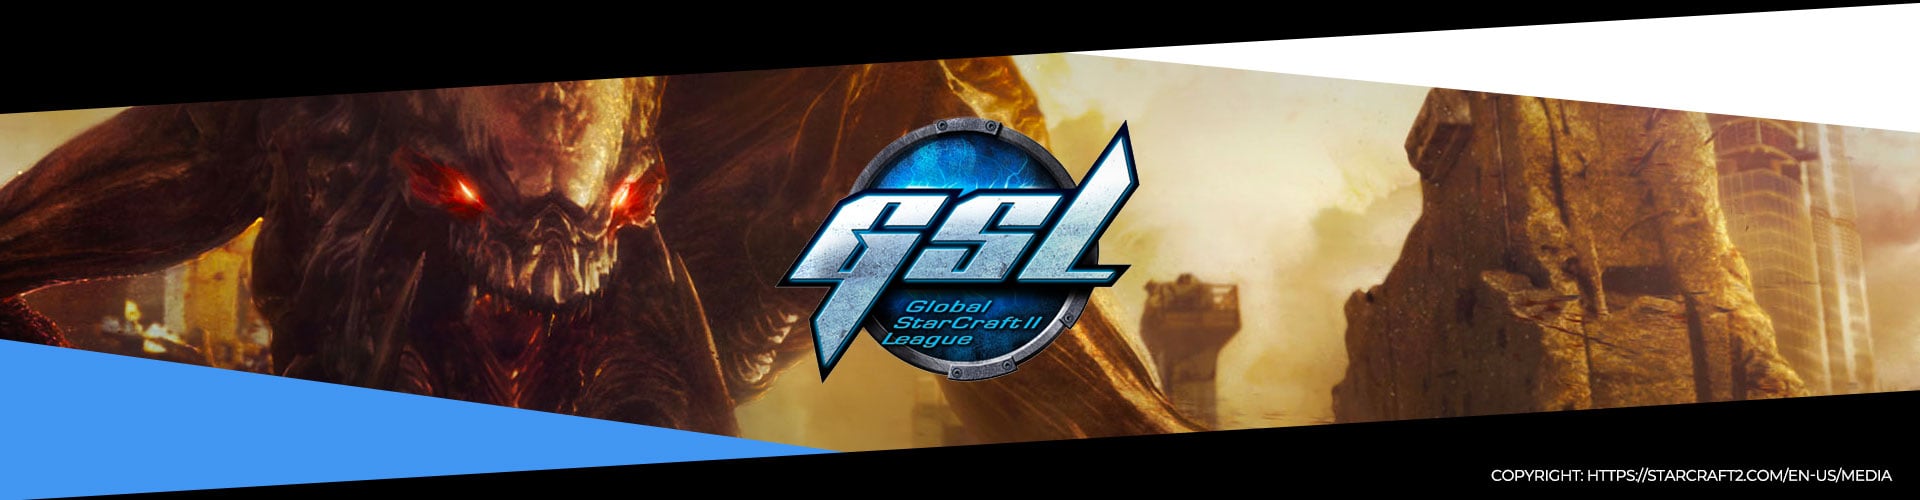 Eventsida för GSL Code S Säsong 2 för StarCraft 2.